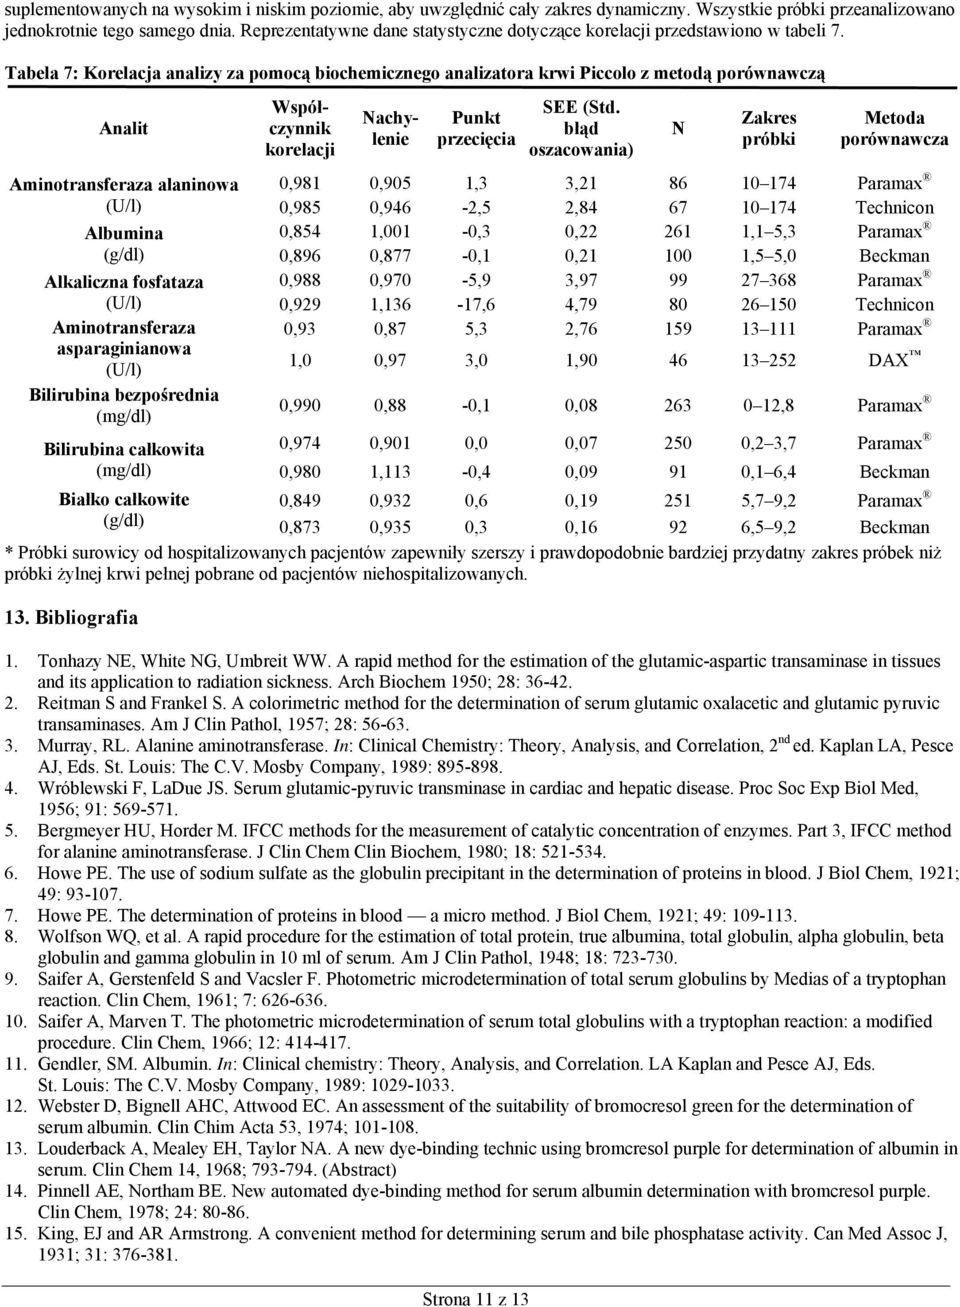 Tabela 7: Korelacja analizy za pomocą biochemicznego analizatora krwi Piccolo z metodą porównawczą Analit Aminotransferaza alaninowa (U/l) Albumina (g/dl) Alkaliczna fosfataza (U/l) Aminotransferaza